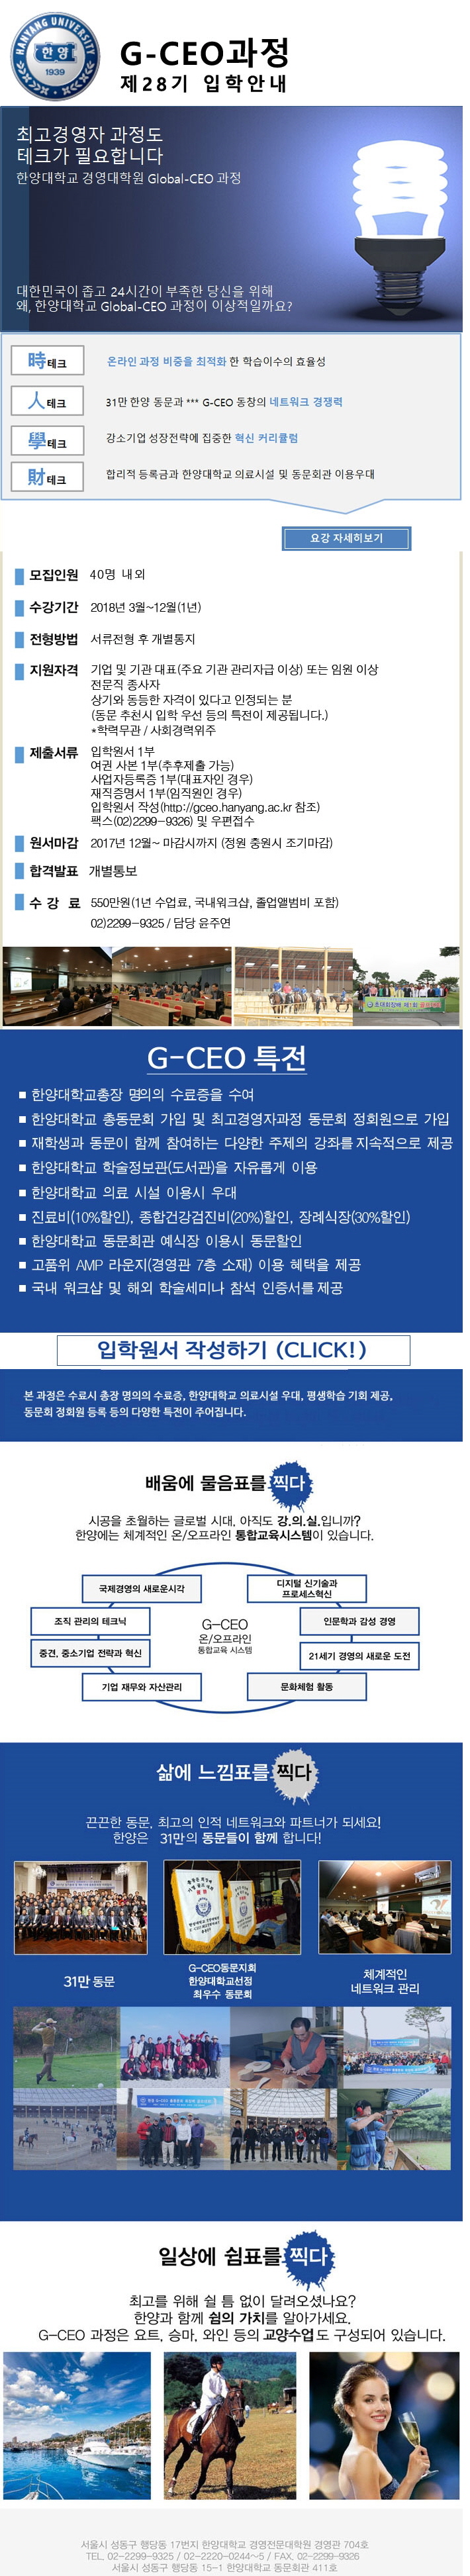 G-CEO과정 28기